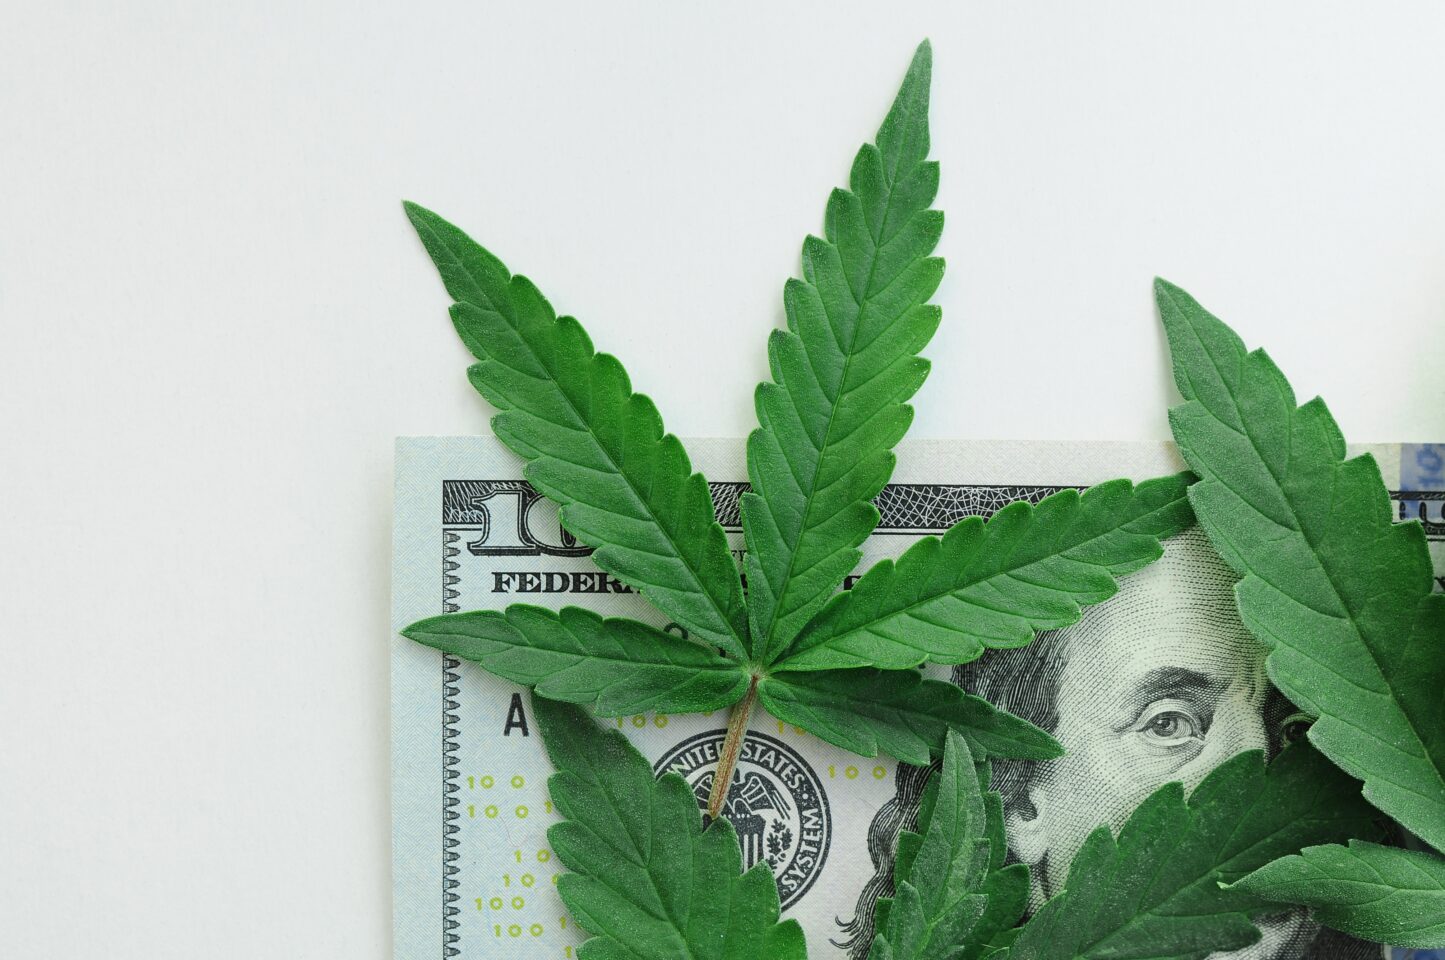 Neuer Bericht des Marijuana Policy Project untersucht acht Jahre Cannabis-Steuereinnahmen